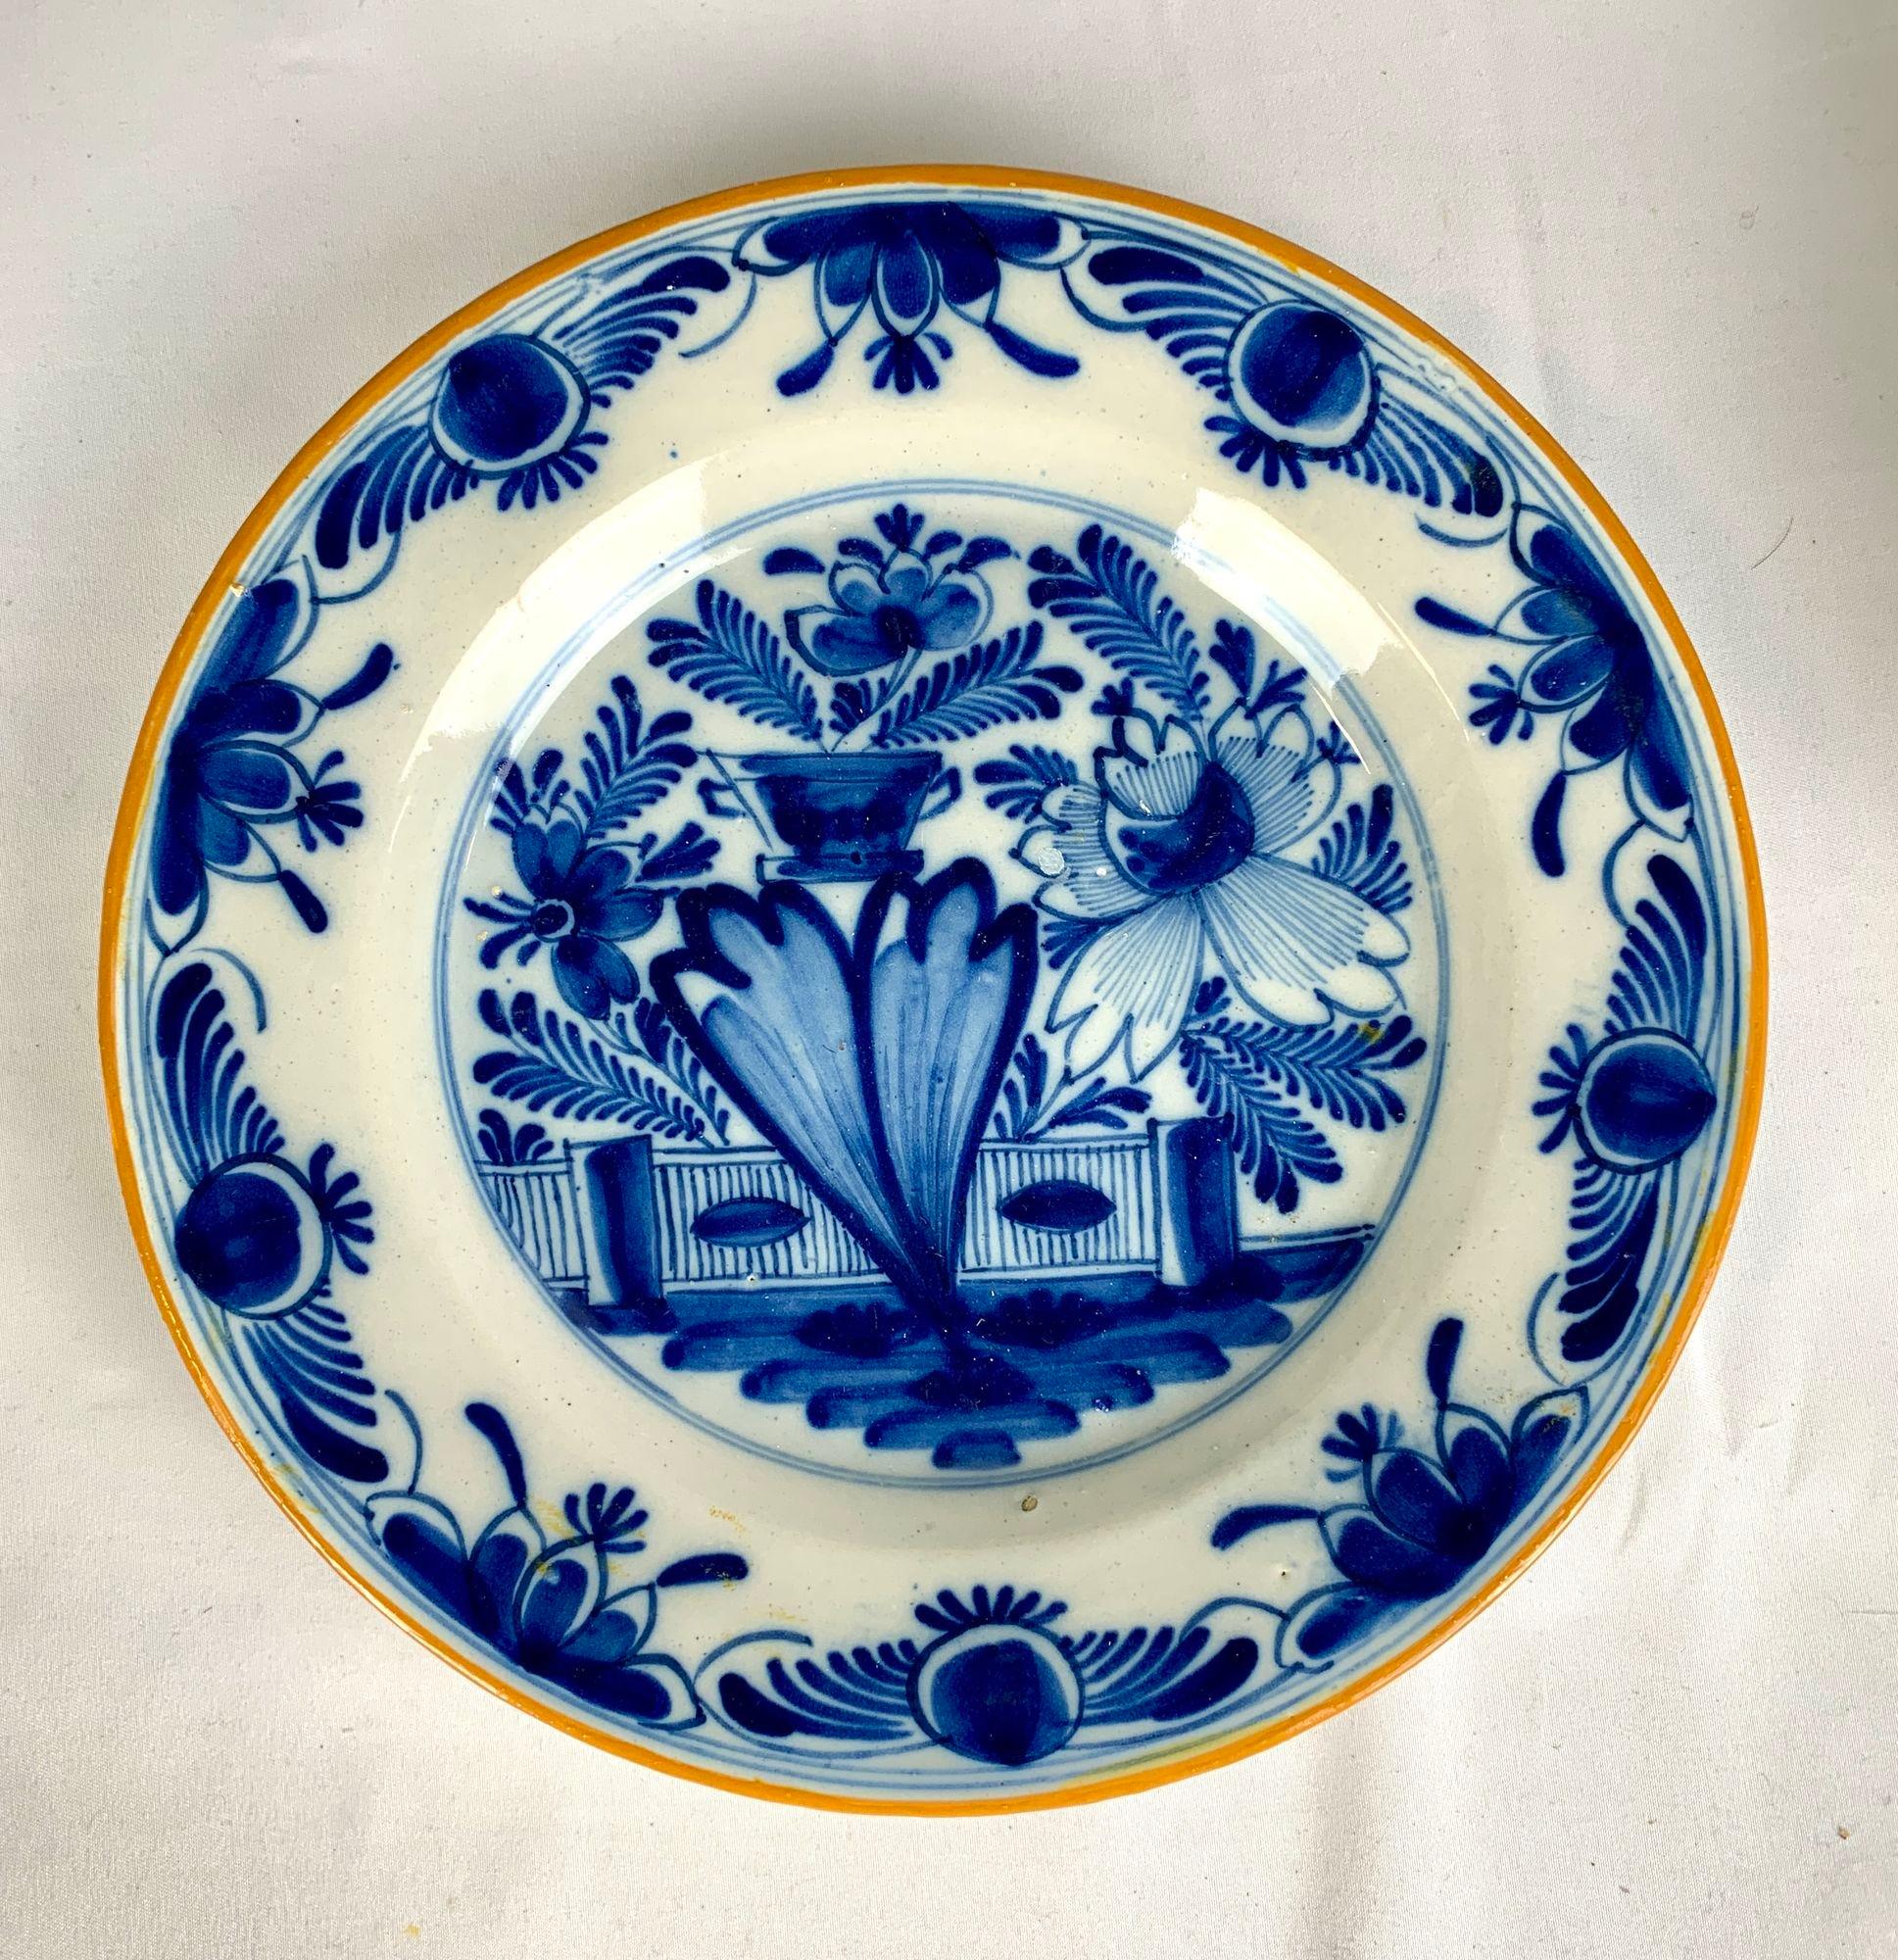 Dieses Paar blauer und weißer Delft-Teller wurde um 1800 in den Niederlanden handbemalt.
Im Mittelpunkt dieses hübschen Geschirrpaars steht eine traditionelle niederländische Delft-Ansicht eines blühenden Gartens.
Wir sehen Blumen, Farne, Ranken,